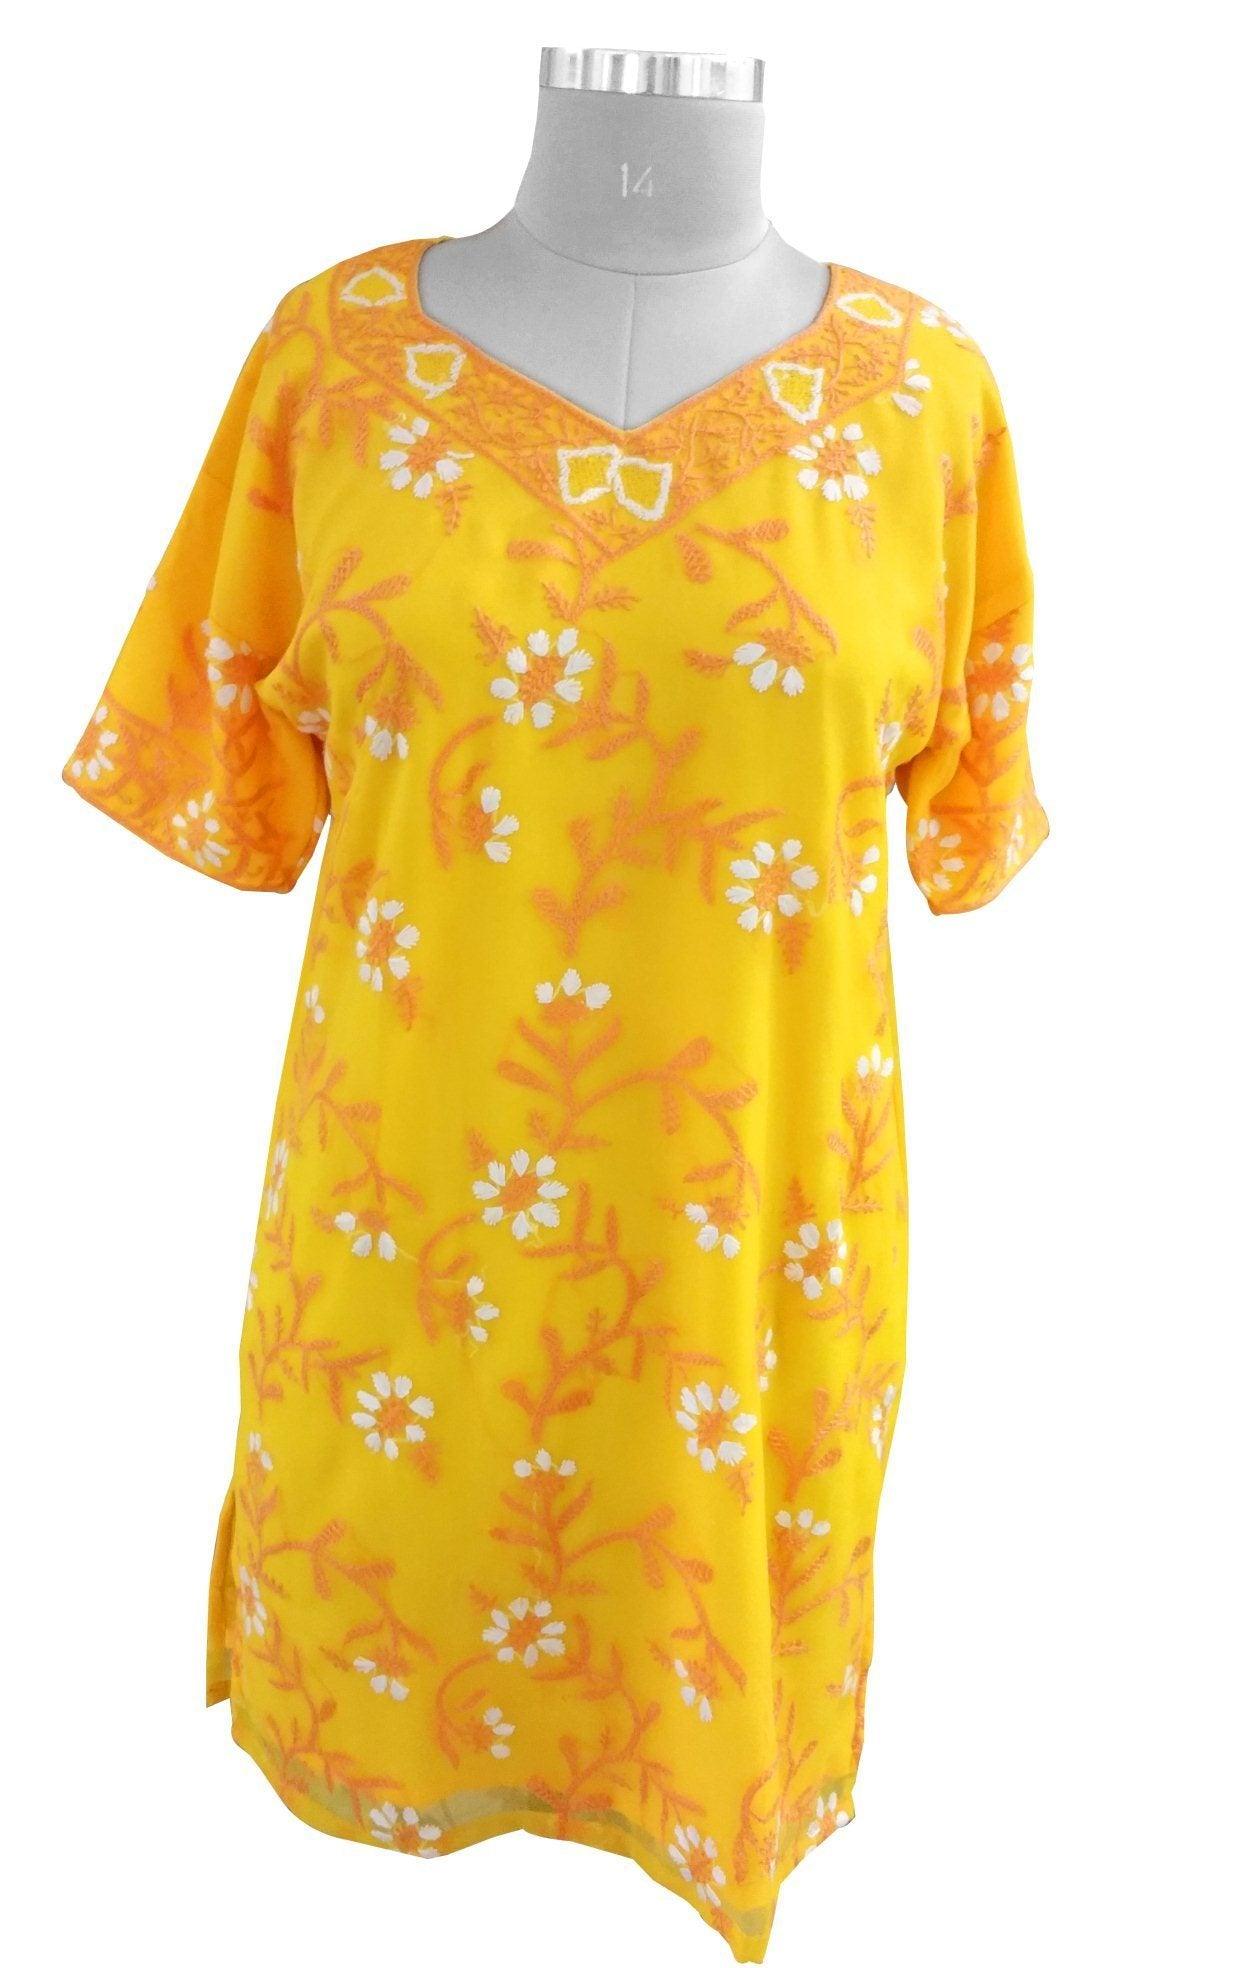 Yellow Chiffon Chikan work Stitched Kurta Dress Size 42 SC552-Anvi Creations-Kurta,Kurti,Top,Tunic